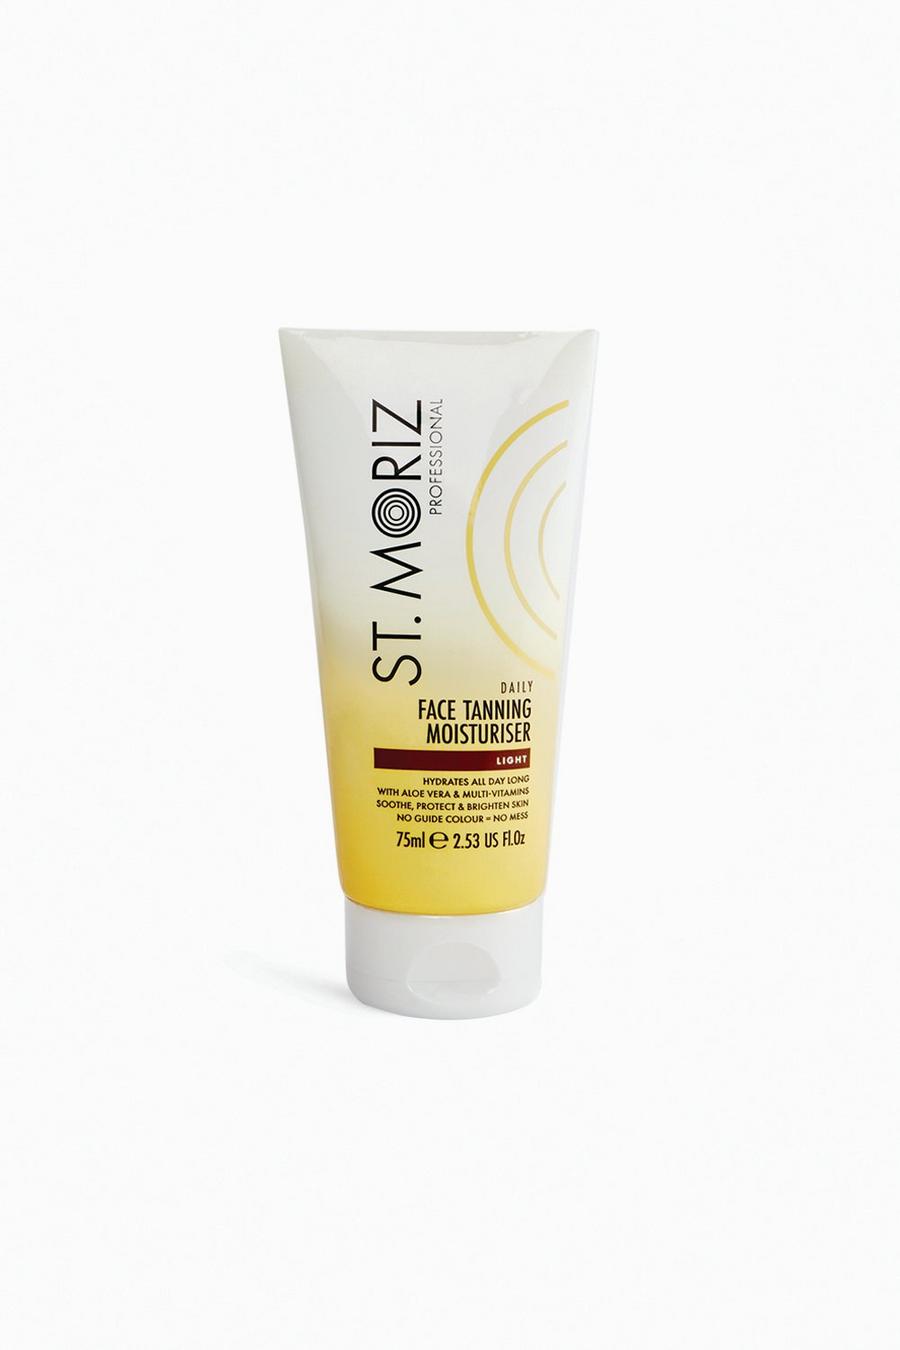 White St. Moriz Professional Daily Face Tanning Moisturiser Light 200ml